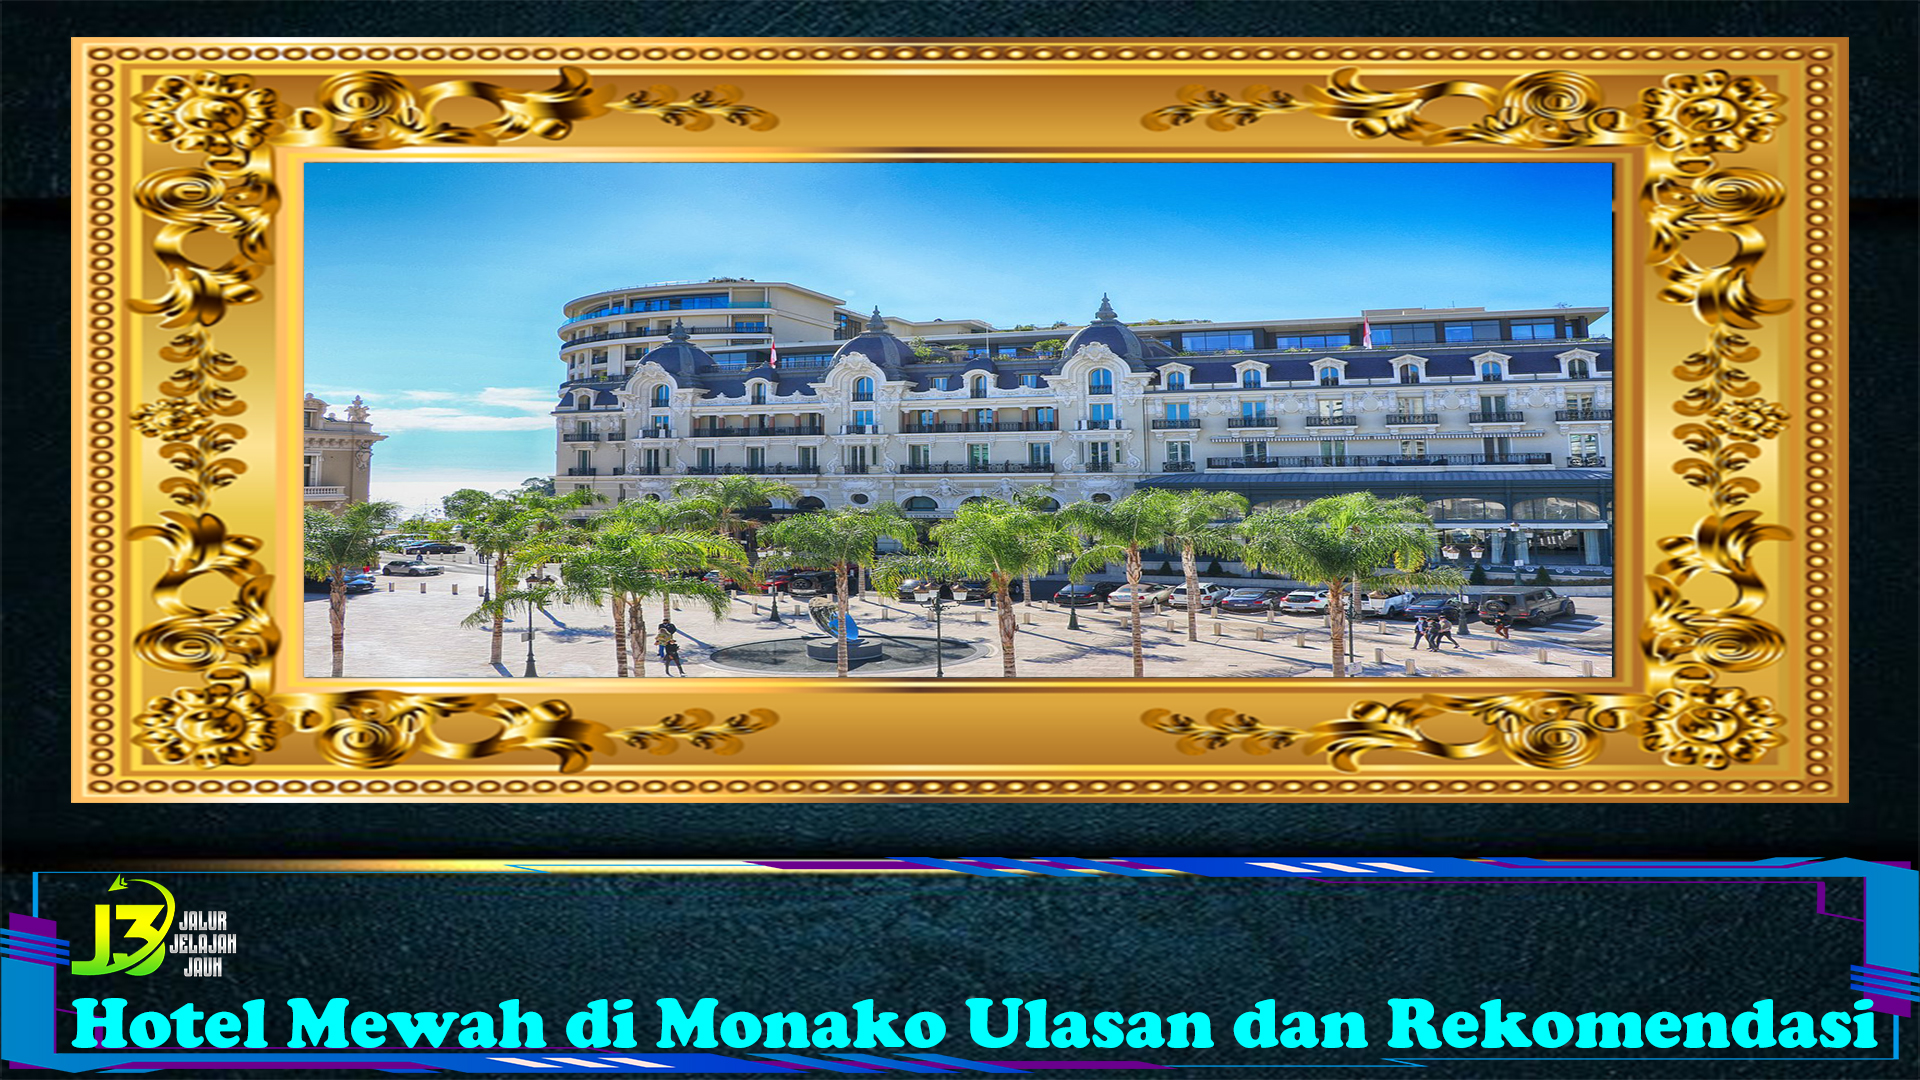 Hotel Mewah di Monako Ulasan dan Rekomendasi